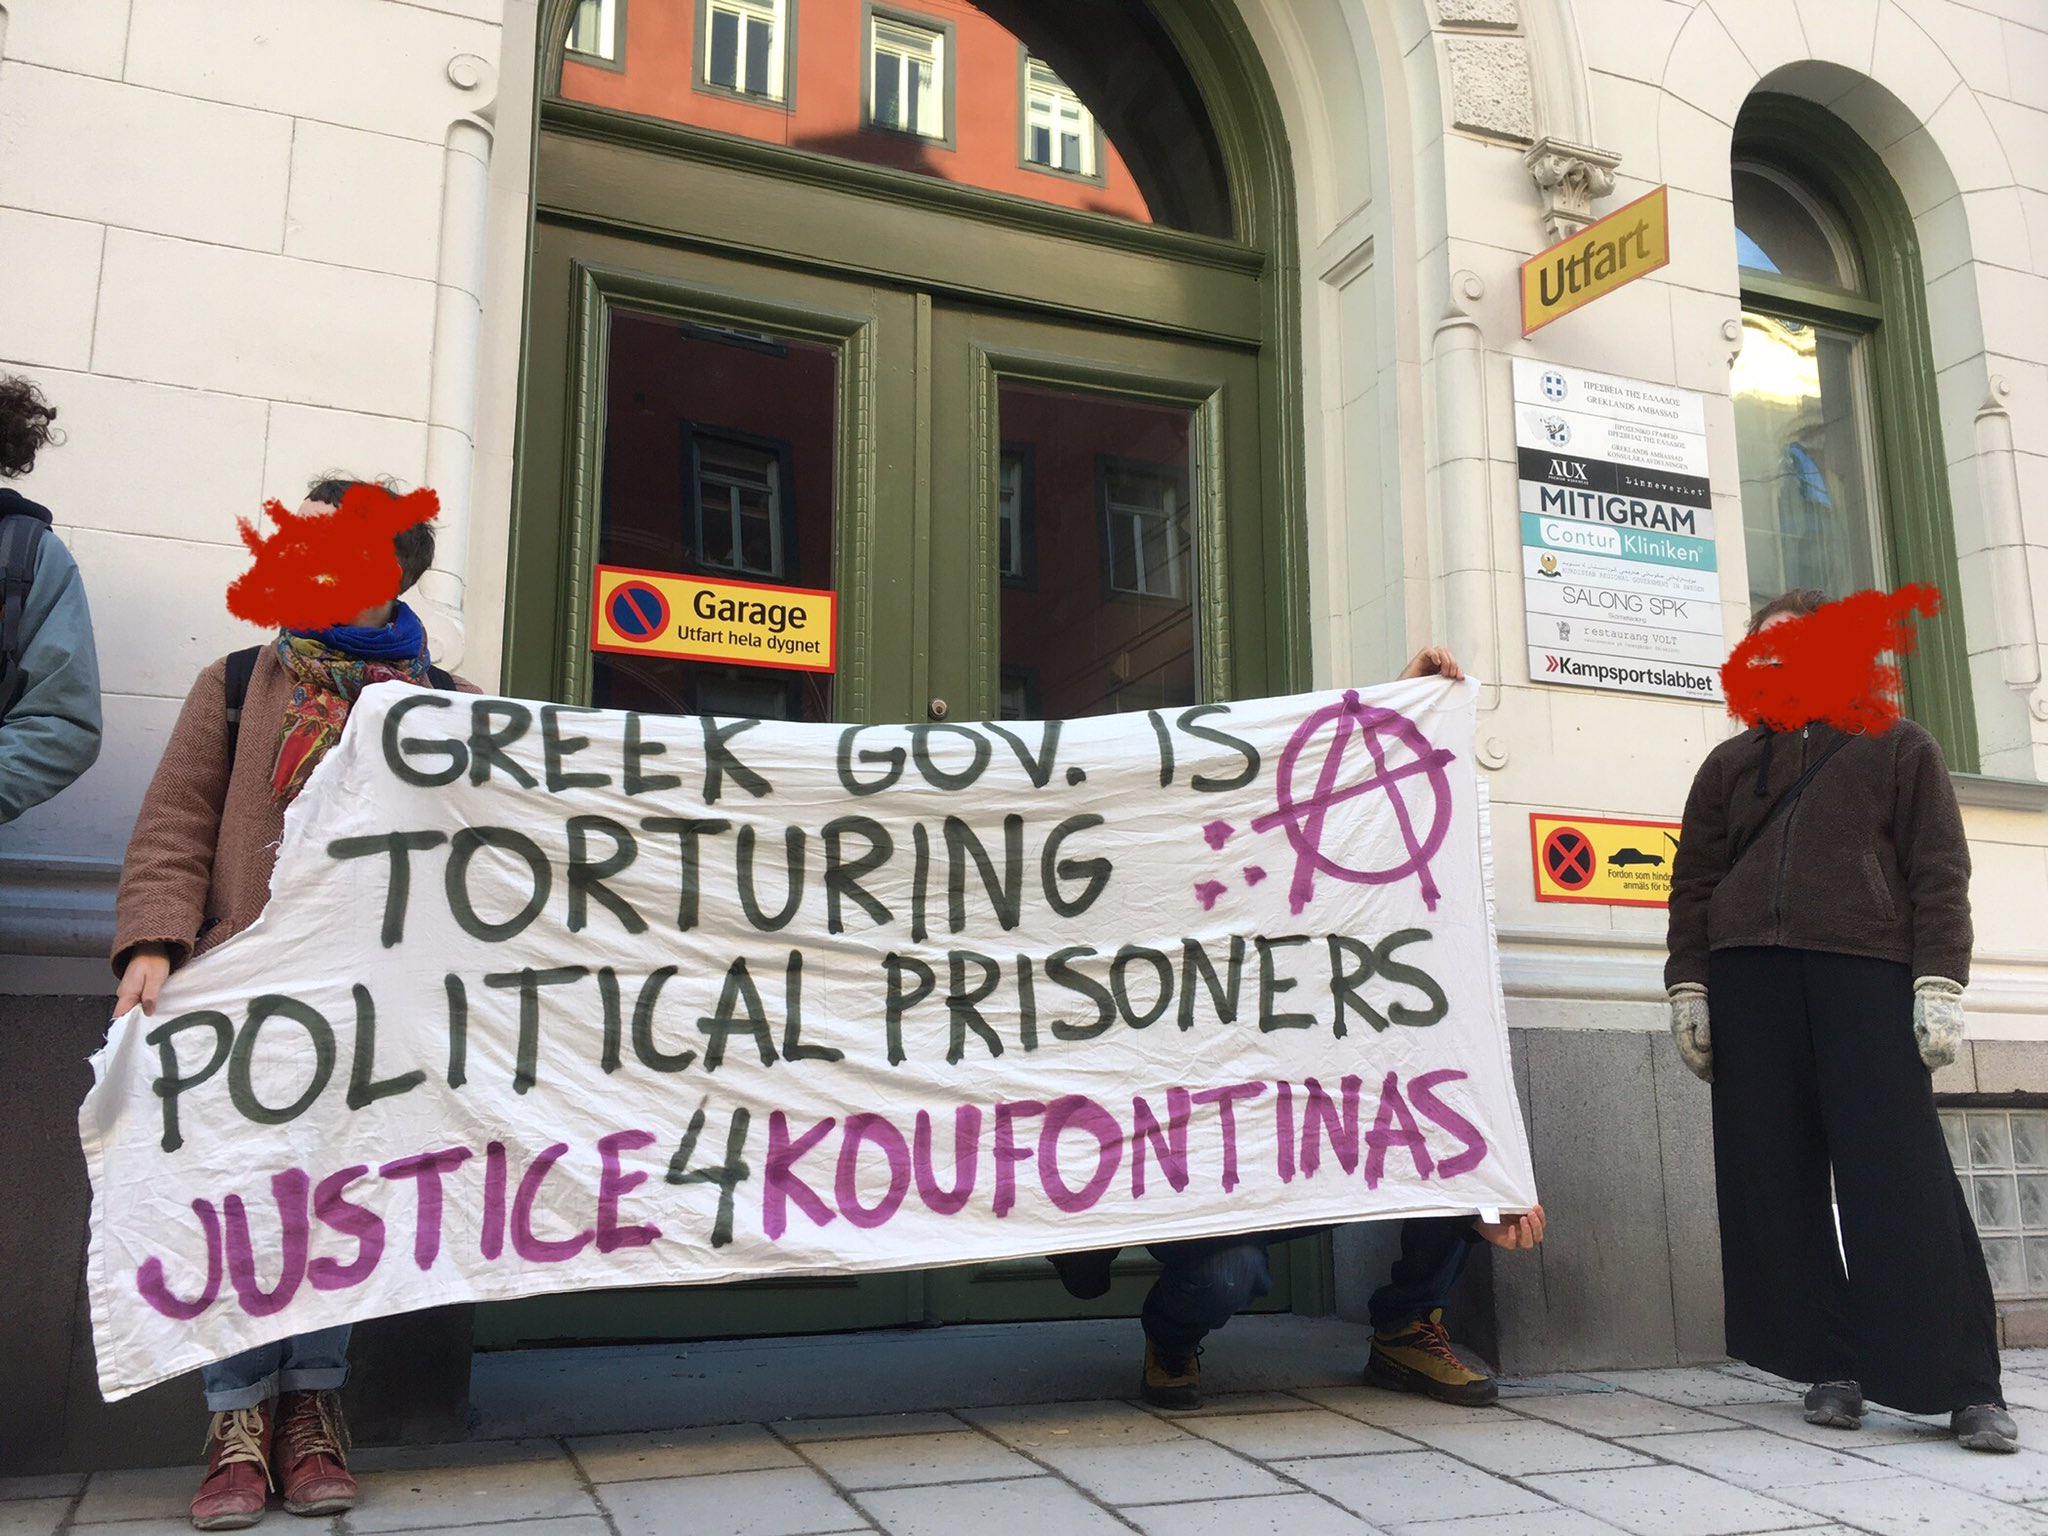 [Video] Αναρχική παρέμβαση για Κουφοντίνα στην ελληνική πρεσβεία (Στοκχόλμη, Σουηδία)